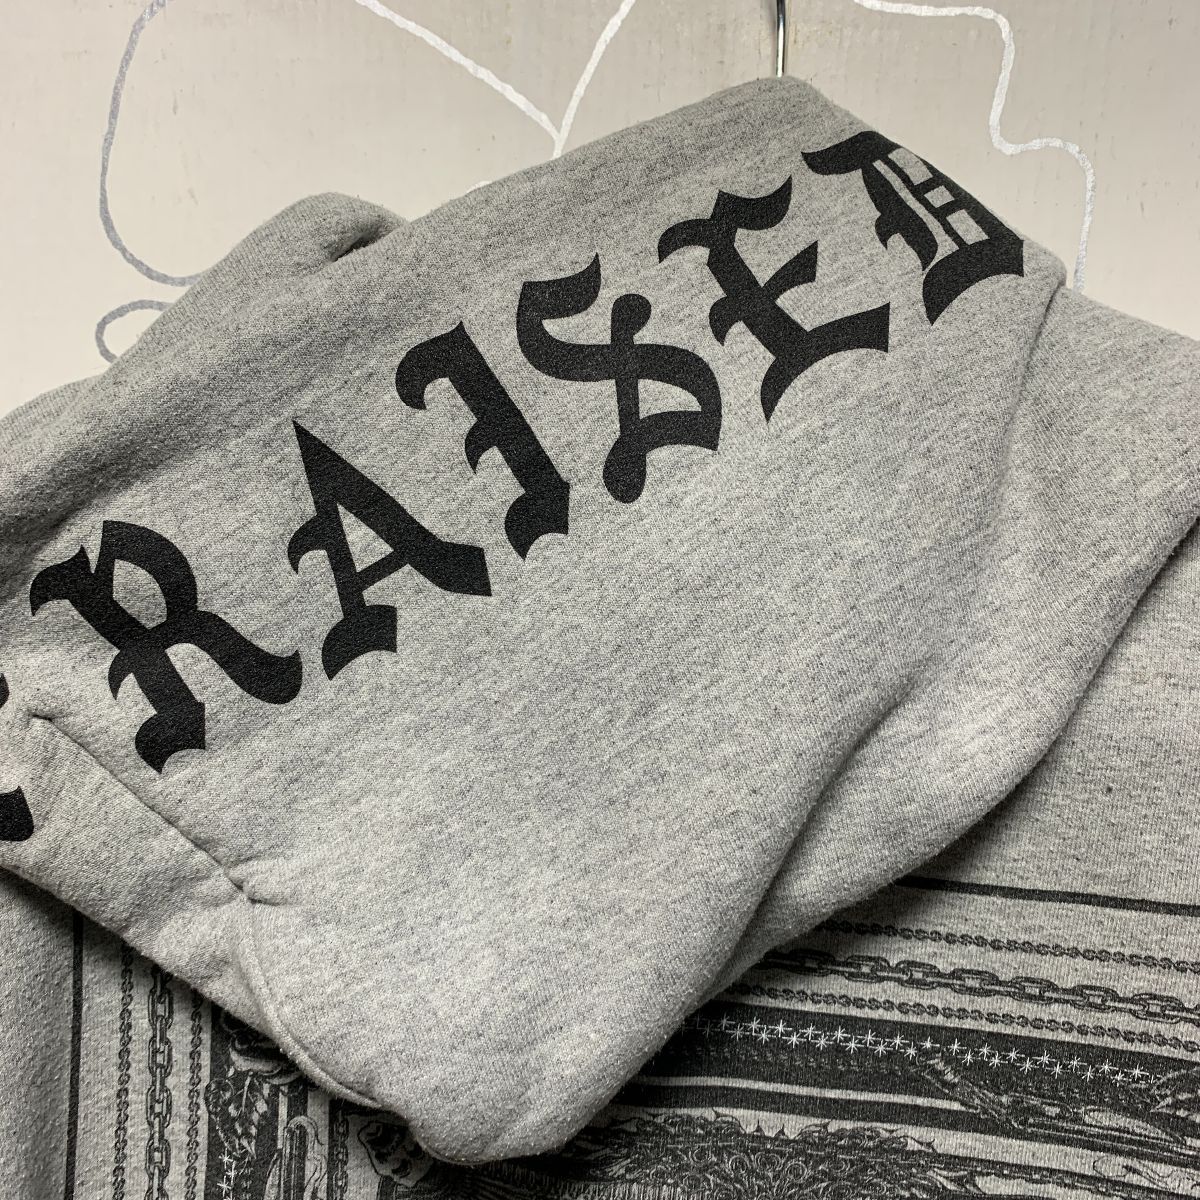 Born X Raised Hooded Sweatshirt With Design Print On Hood